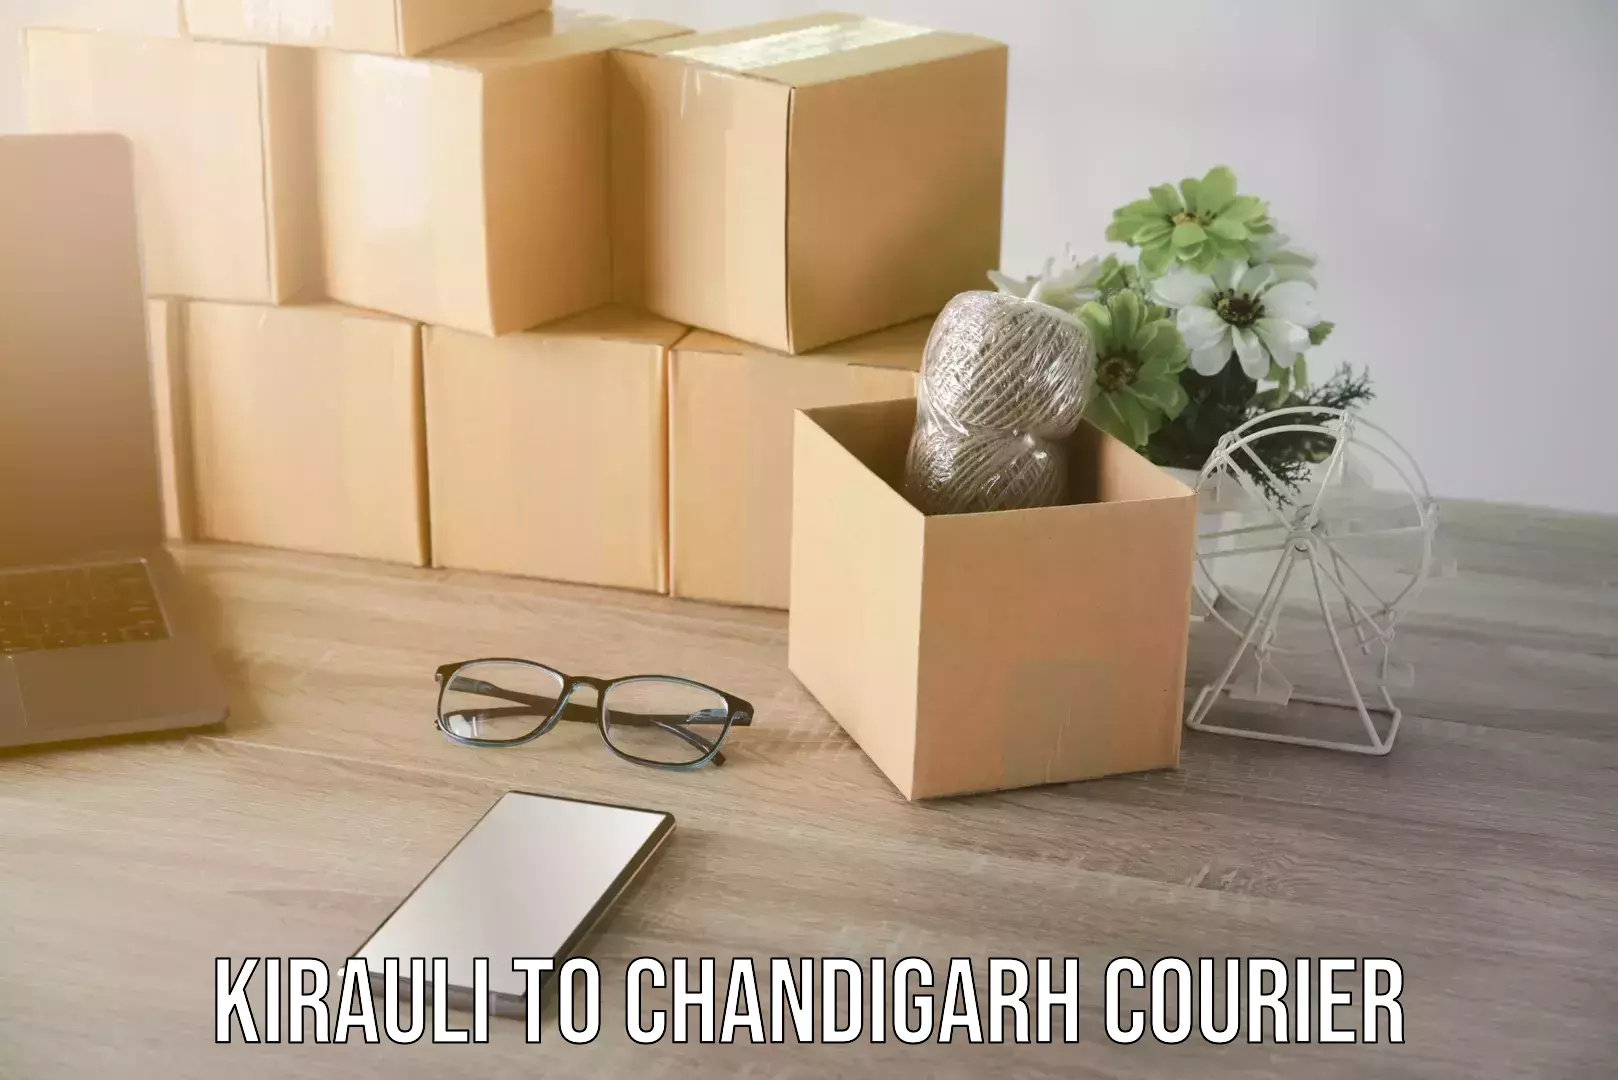 Home shifting experts Kirauli to Chandigarh